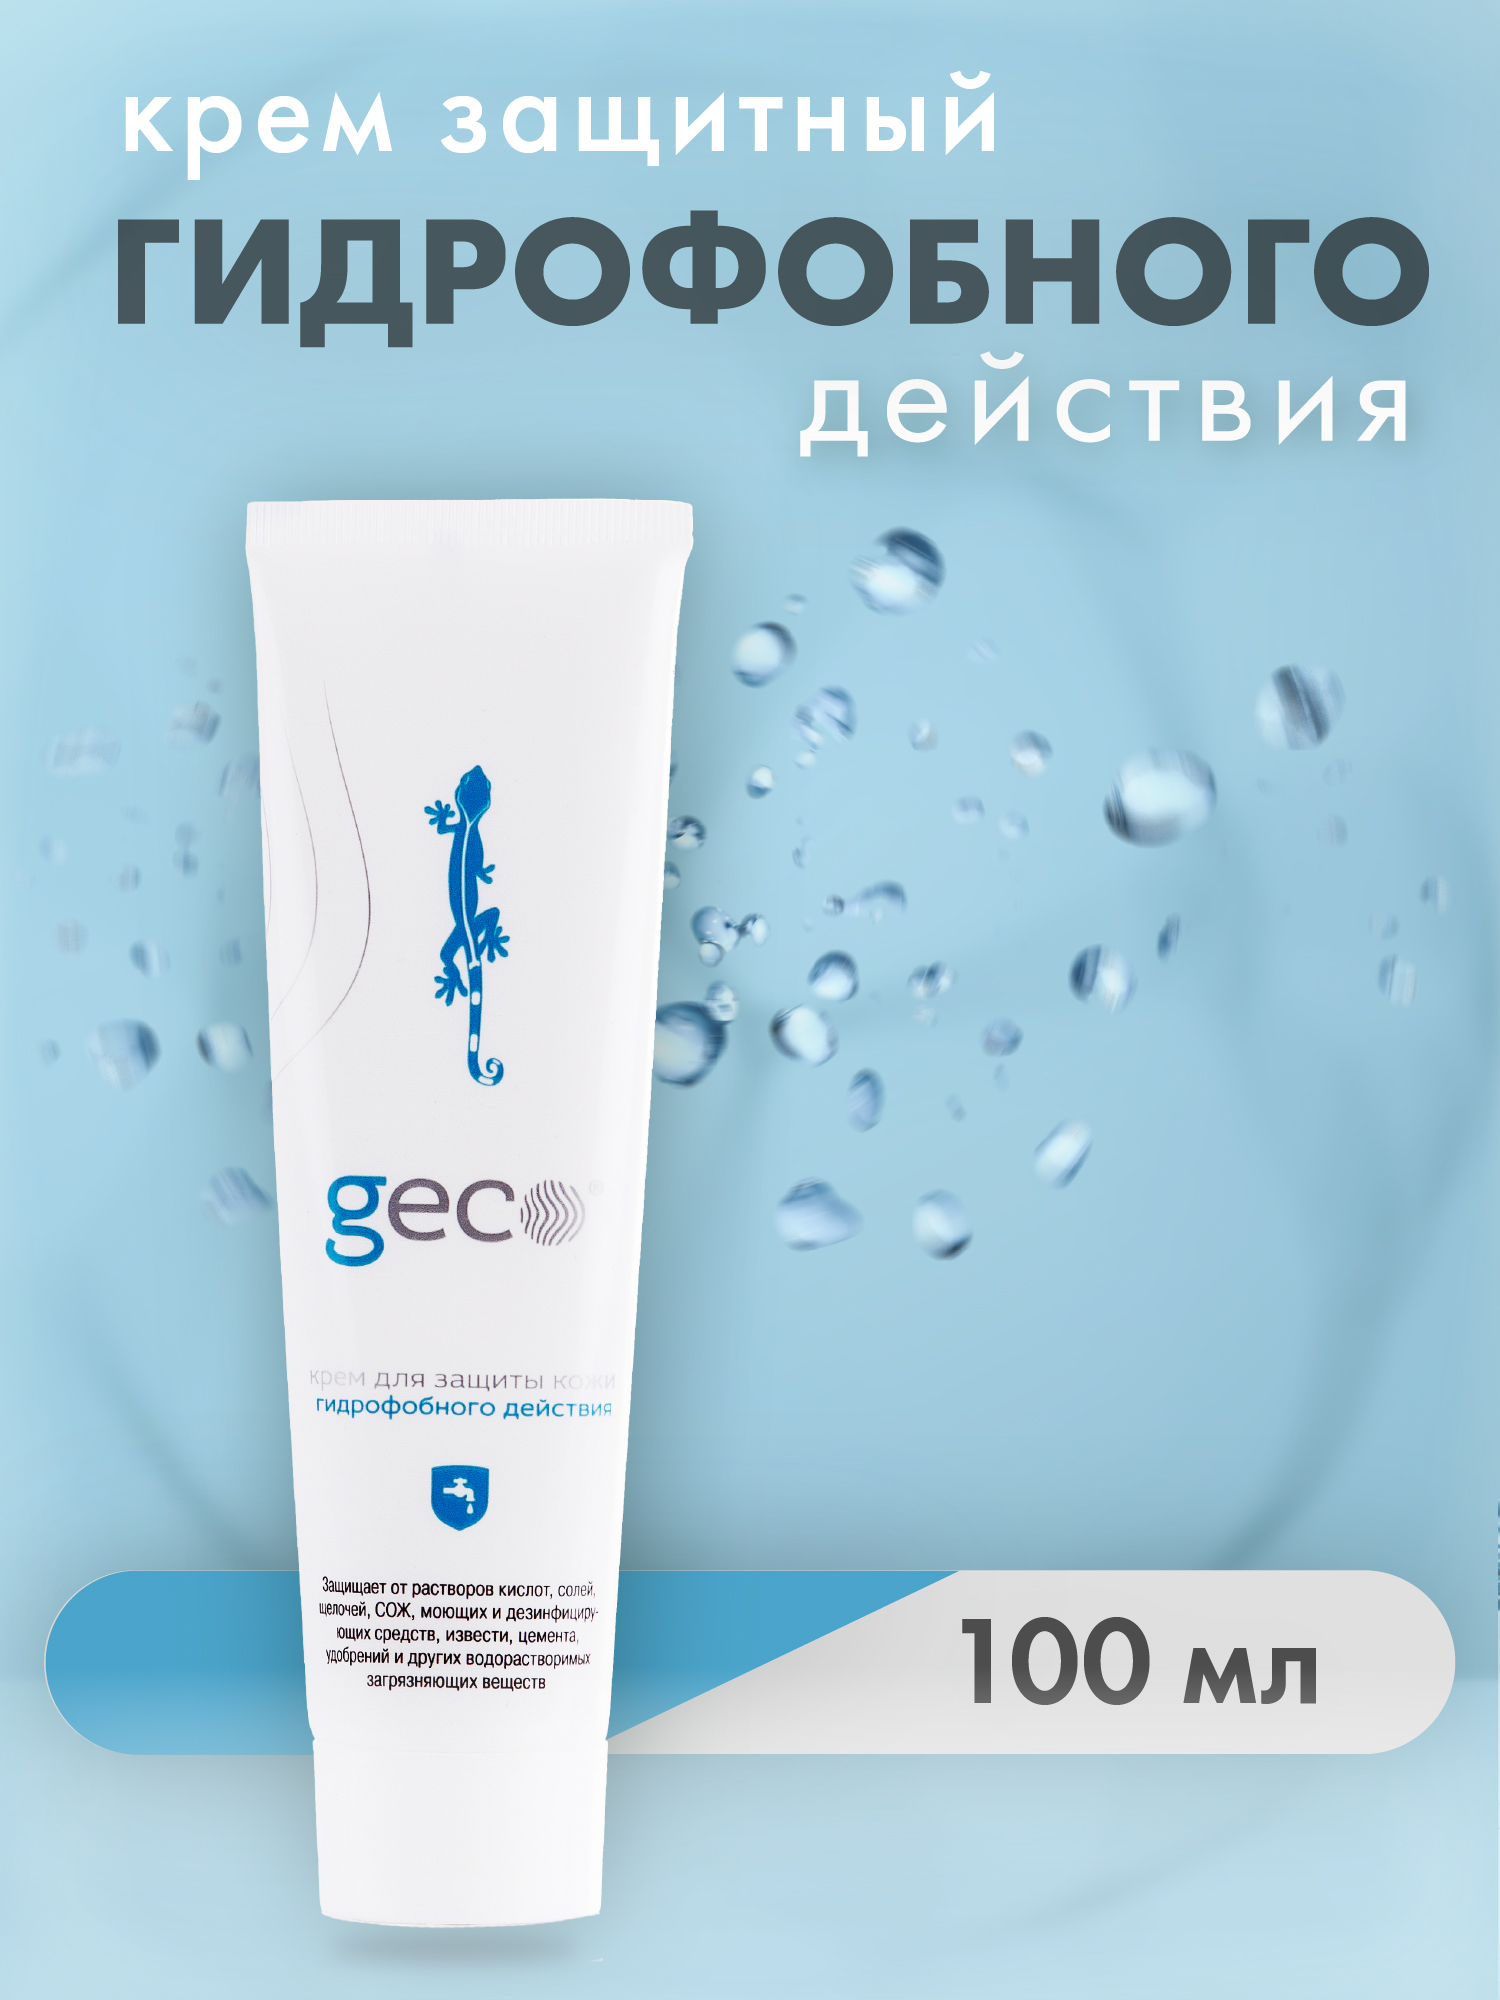 Крем гидрофобного действия GECO  для защиты кожи рук  туба с винтовой крышкой 100 мл новатенол крем 5% туба 25 г